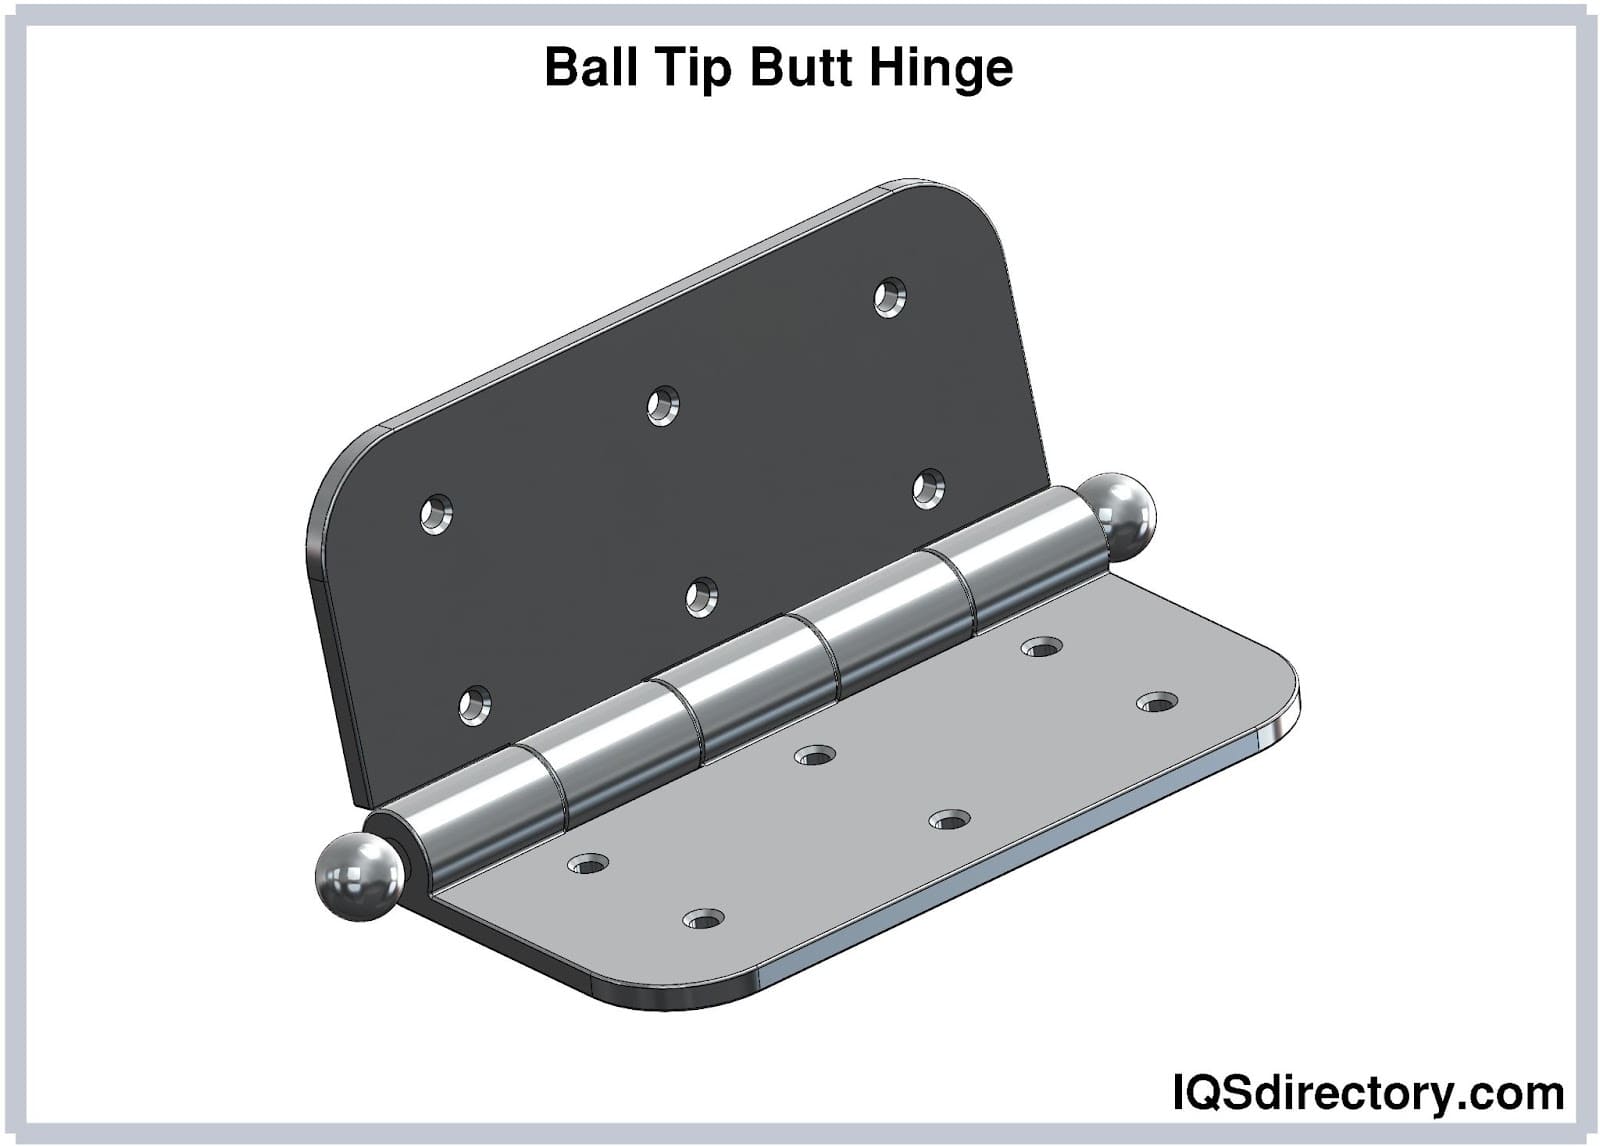 Ball Tip Butt Hinge